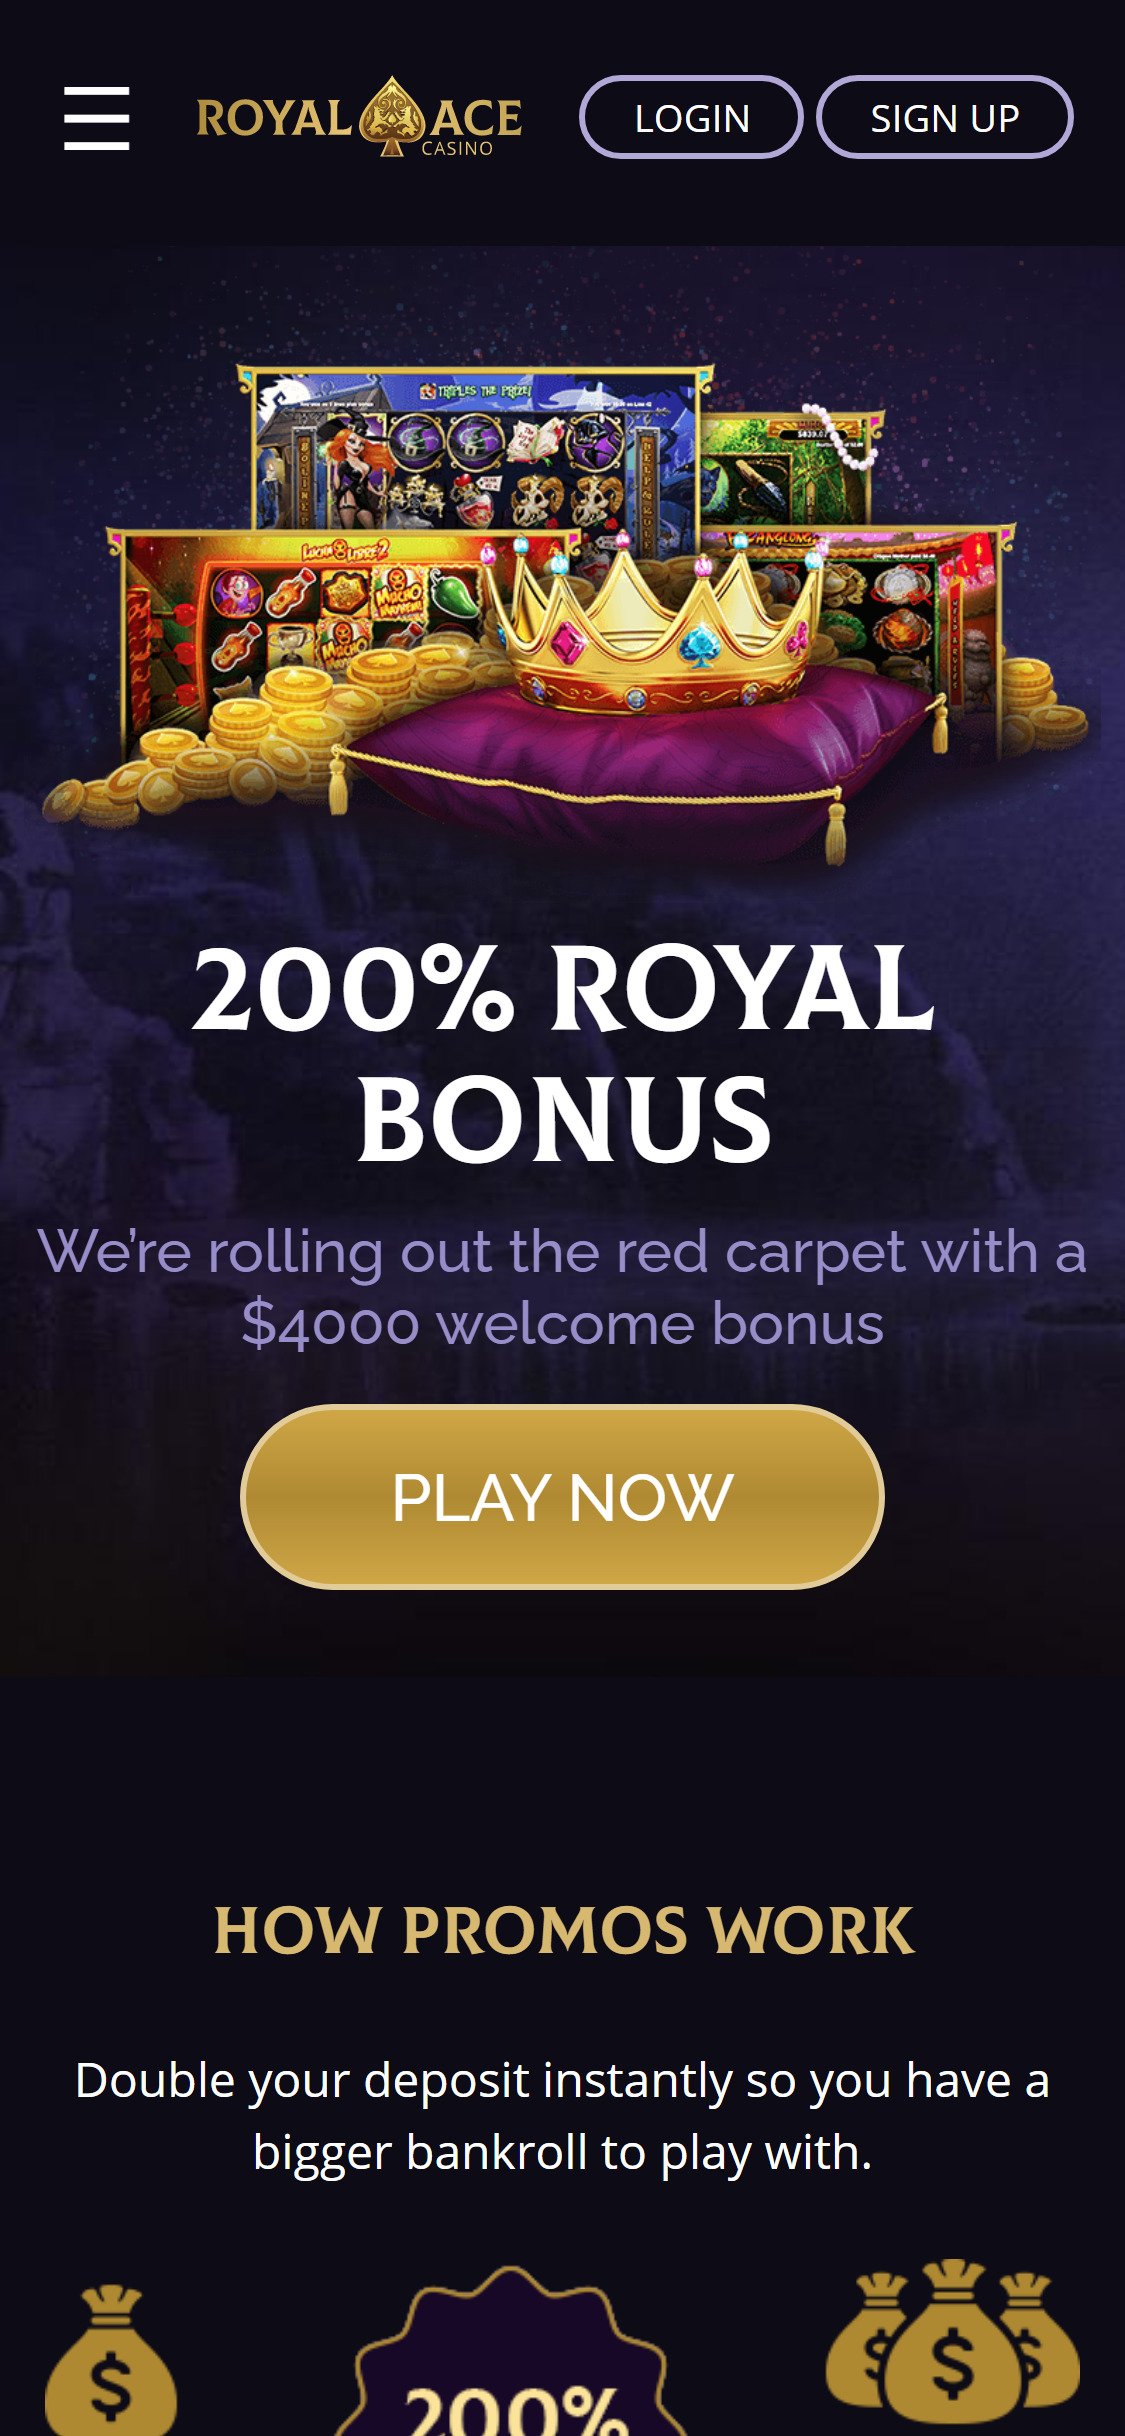 royal ace casino complaints